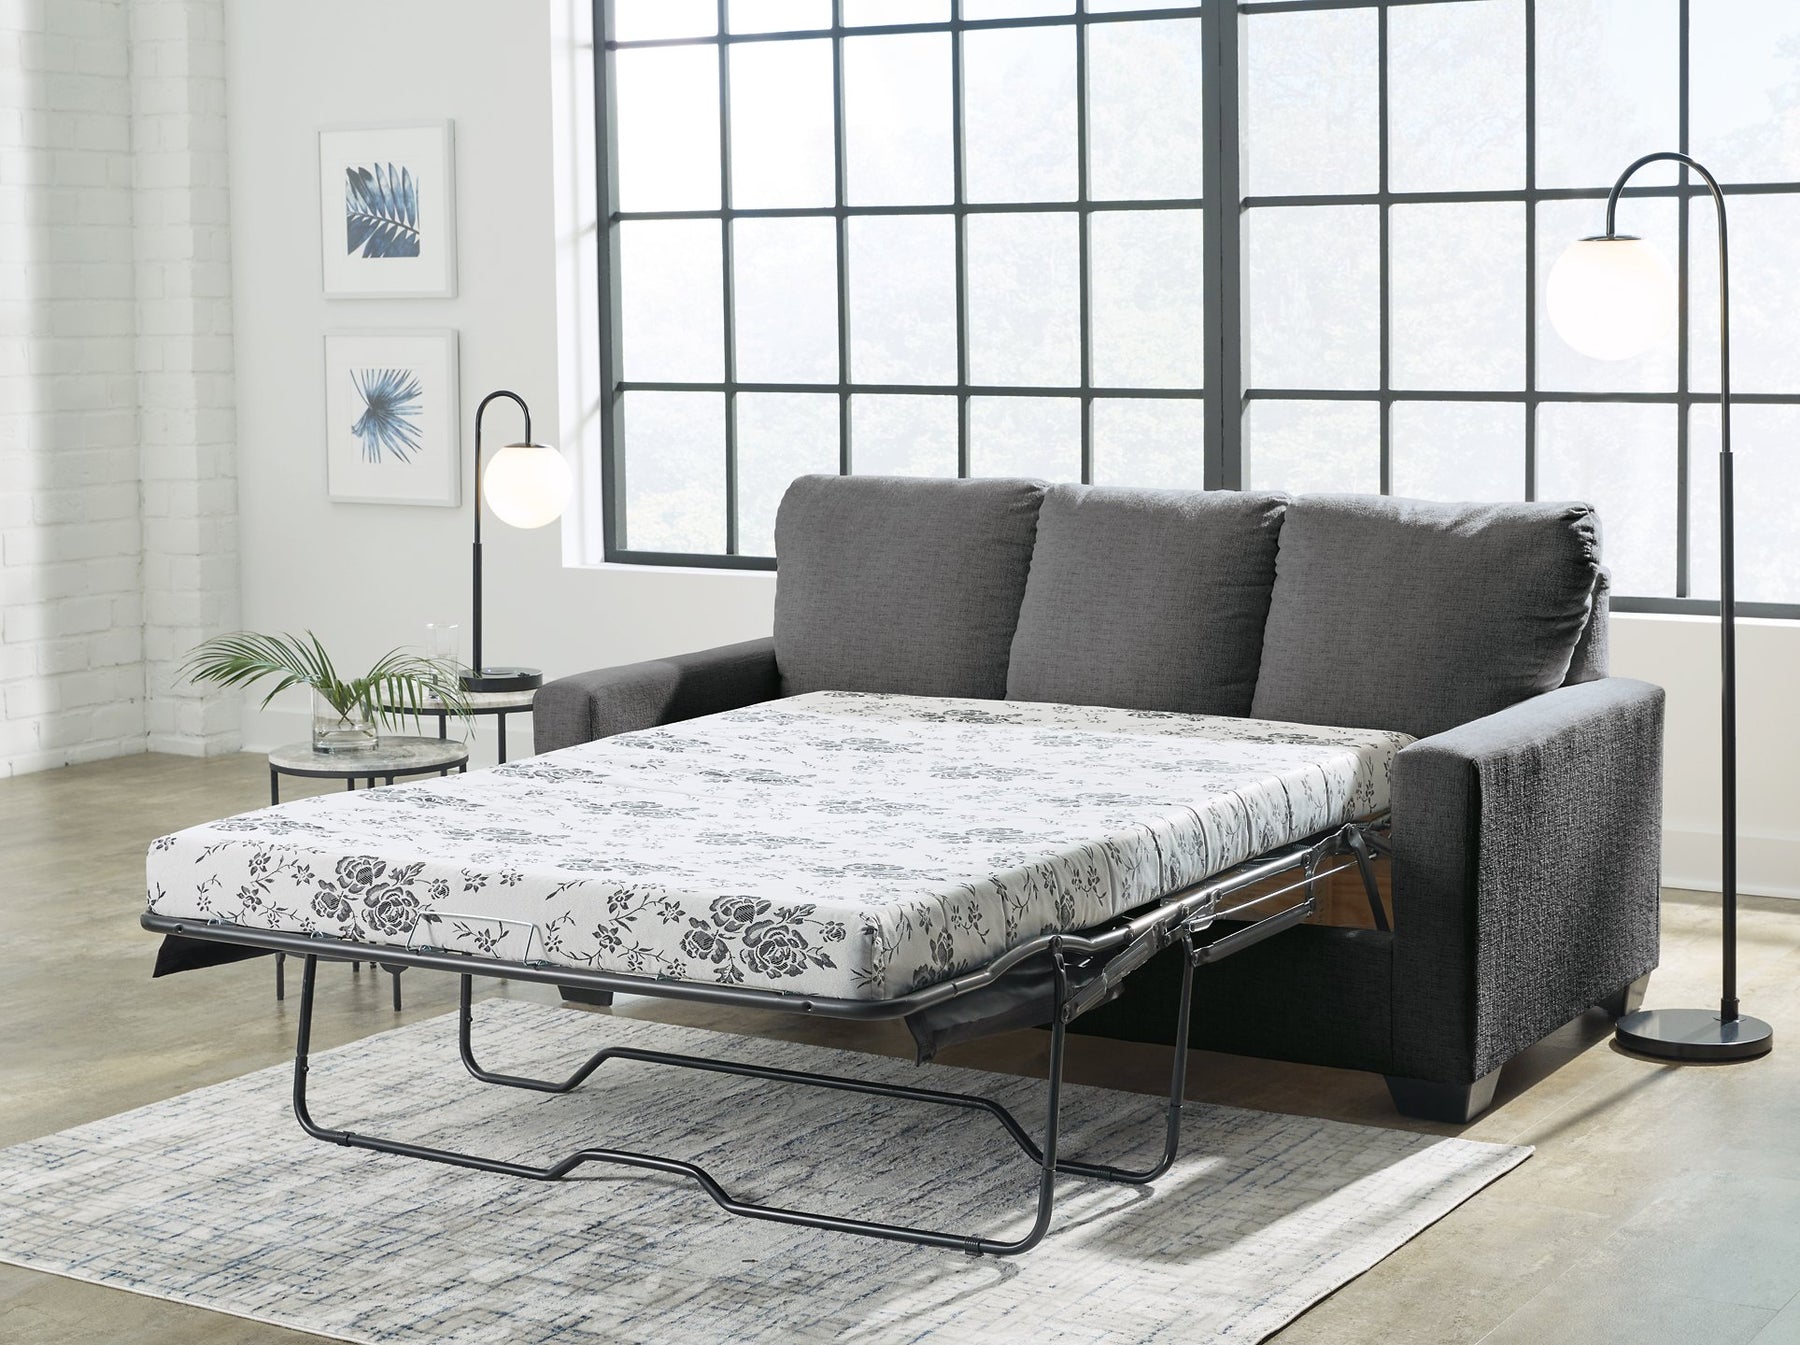 Rannis Sofa Sleeper - Half Price Furniture